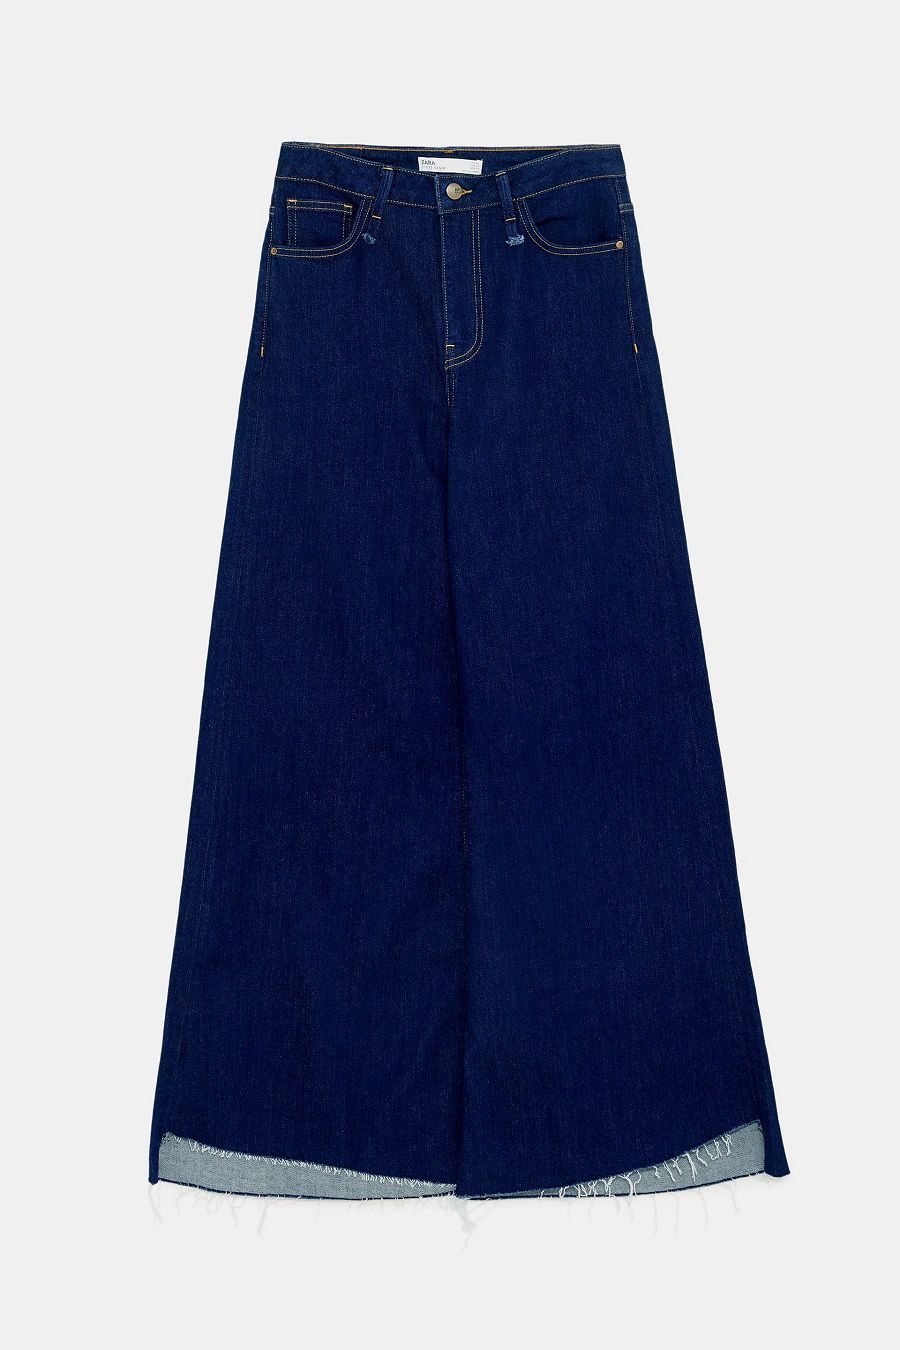 Rekomendasi Celana Jeans Keren untuk Dipakai Sehari-hari